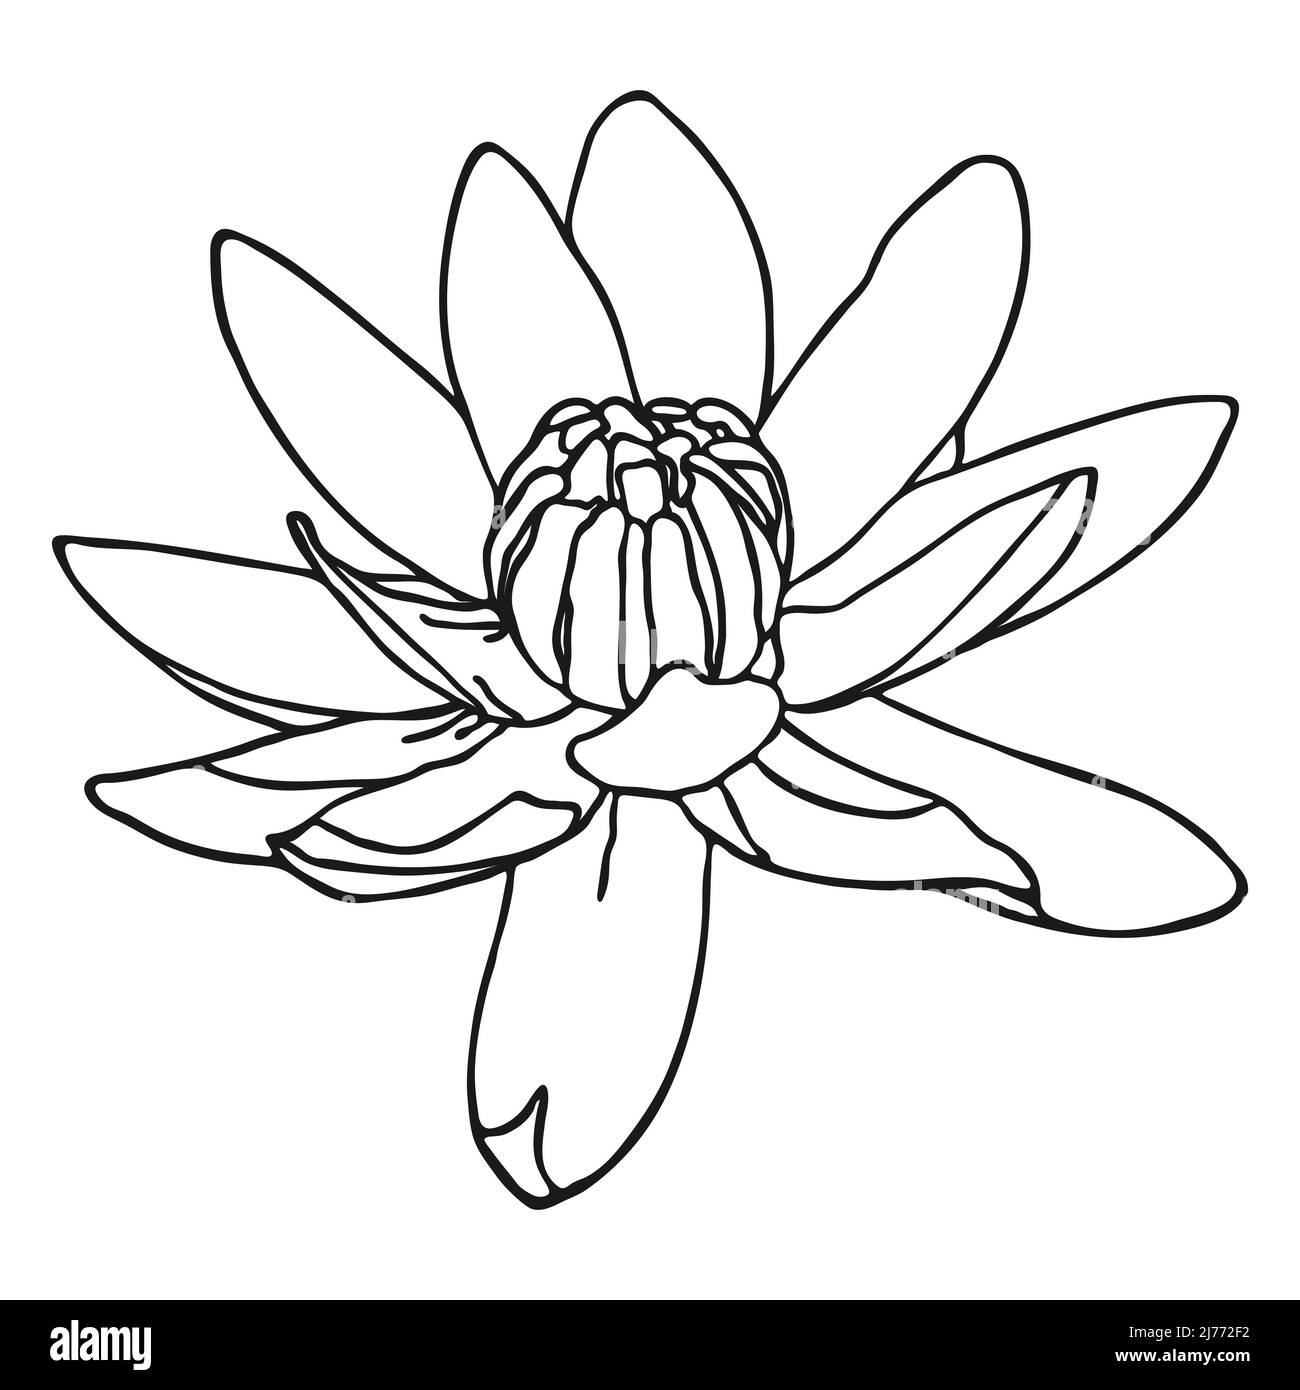 Croquis de fleurs de Lotus. Croquis de Doodle Lotus. Dessin simple à la main d'une fleur. Contour noir. Illustration vectorielle. Illustration de Vecteur